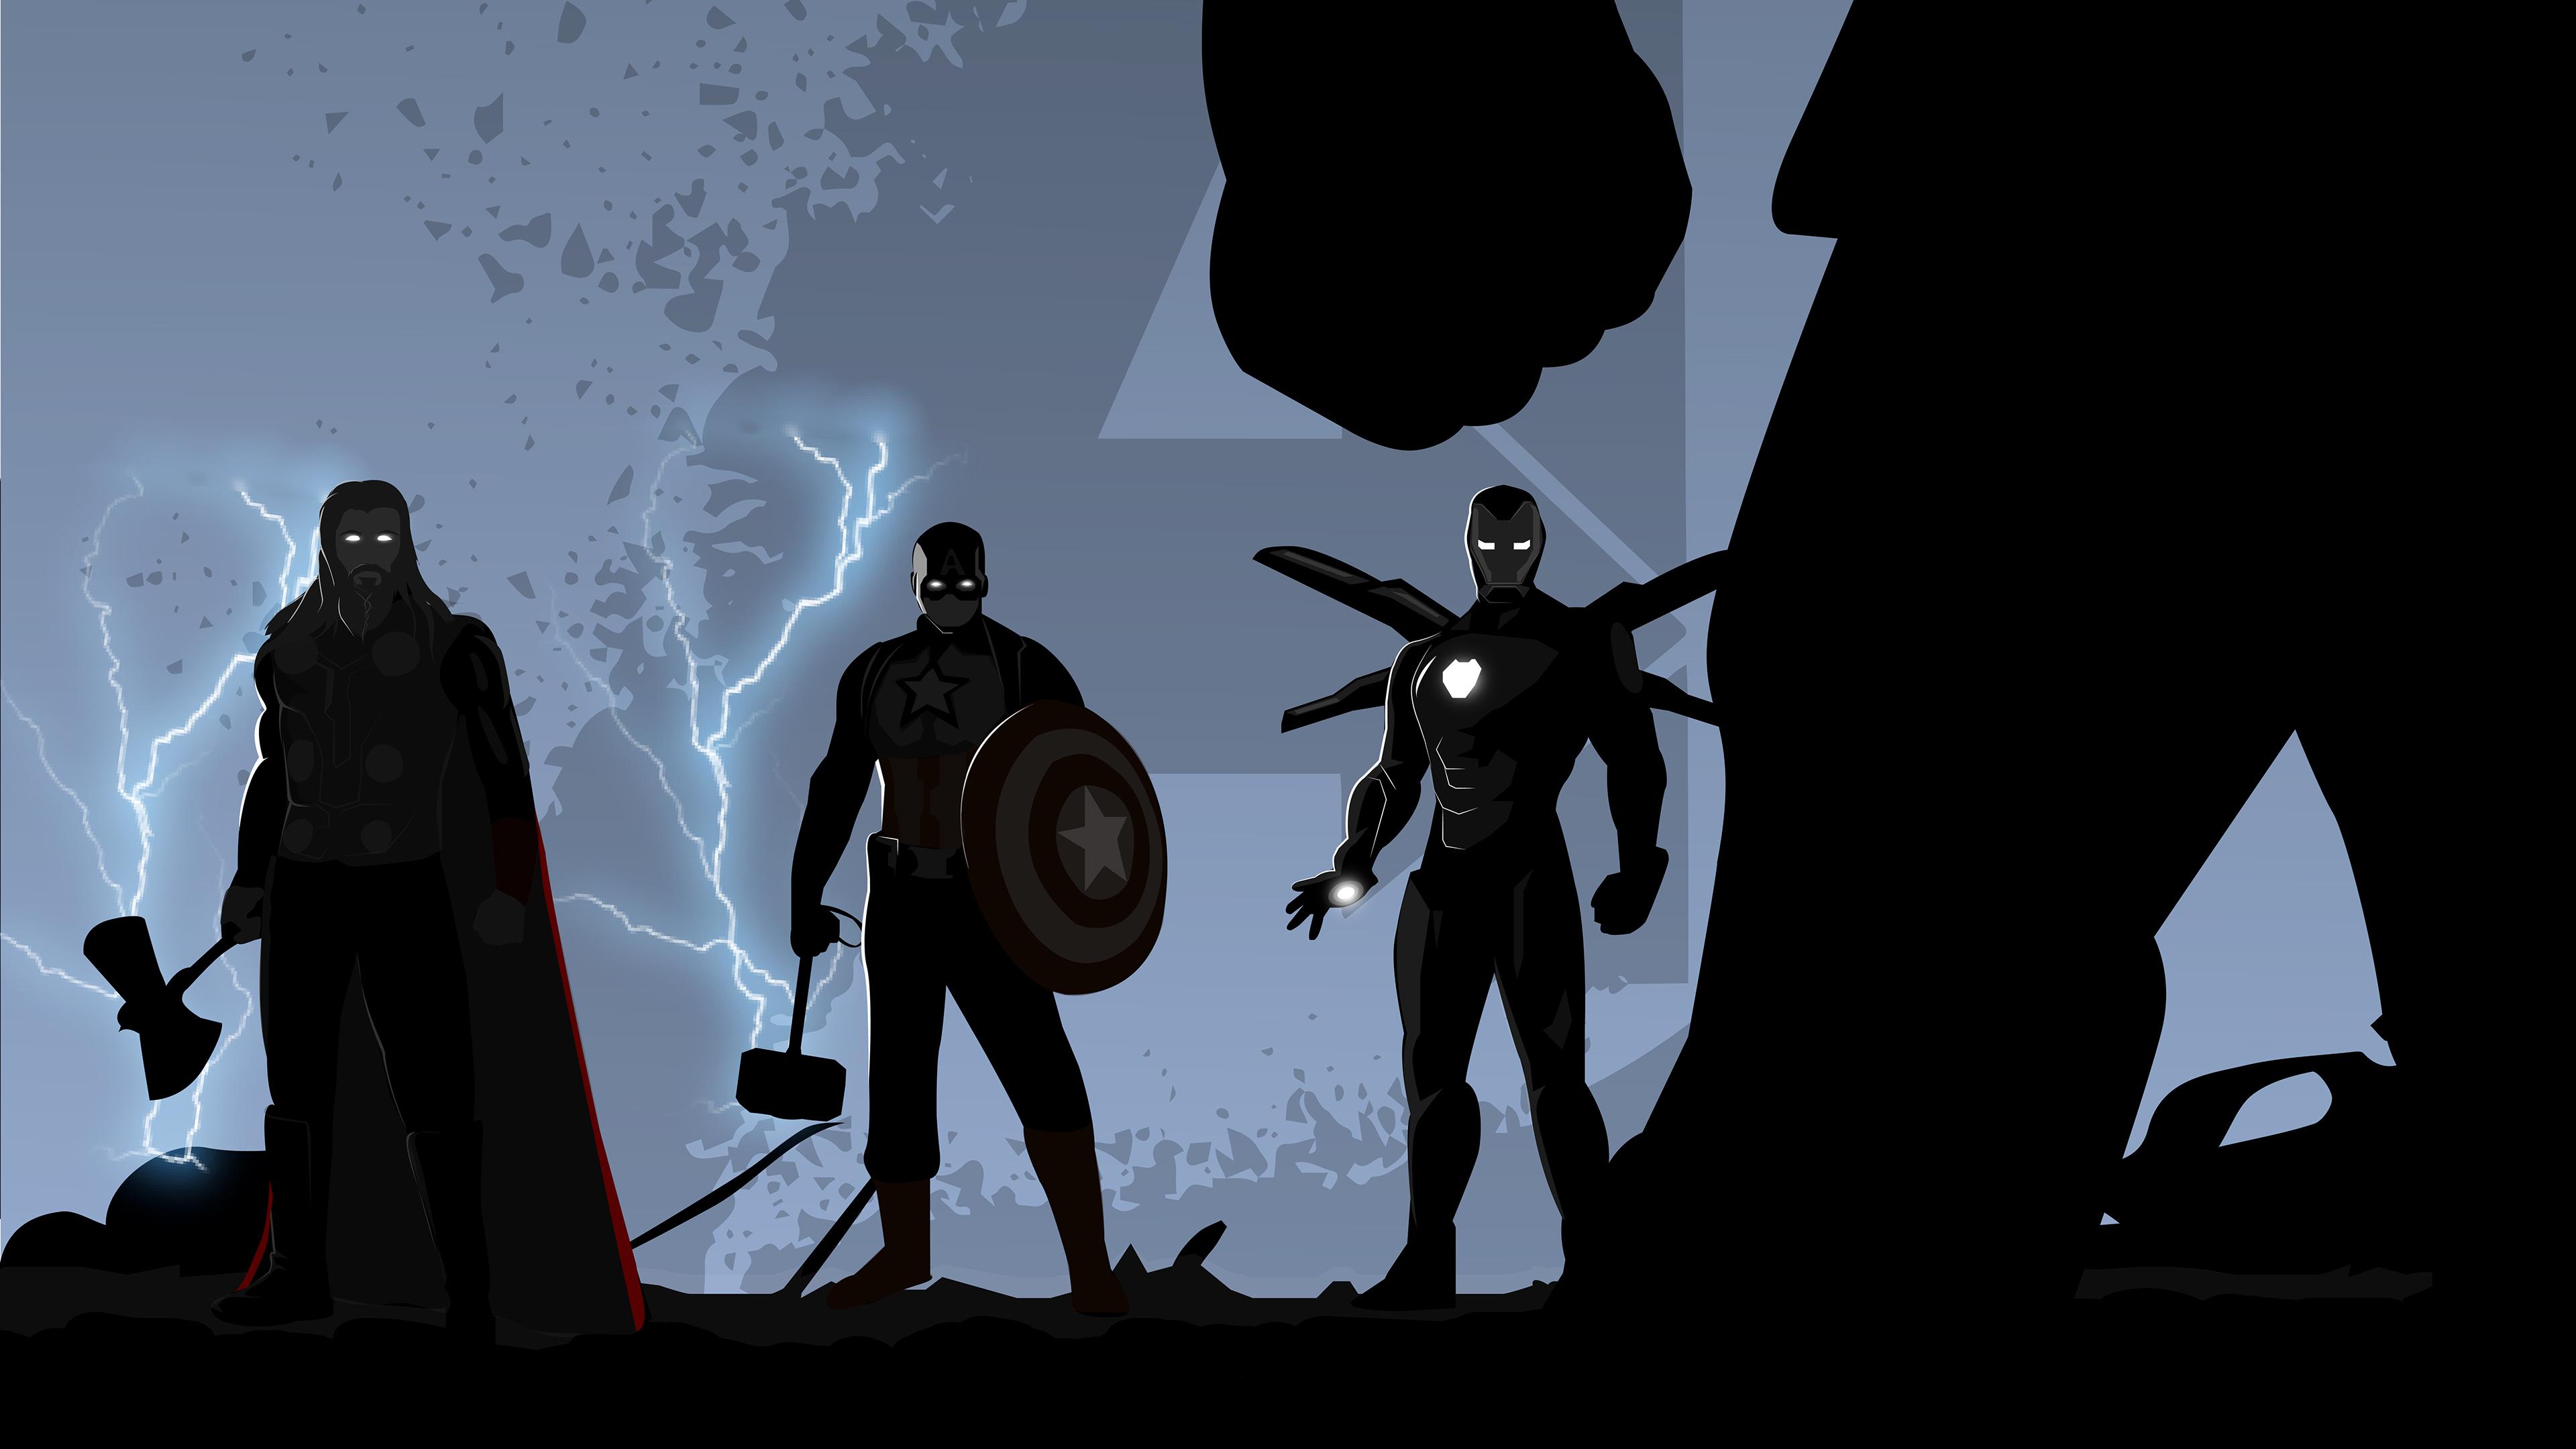 Wallpaper 4k Avengers Endgame Minimal Illustration 4k 2019 movies